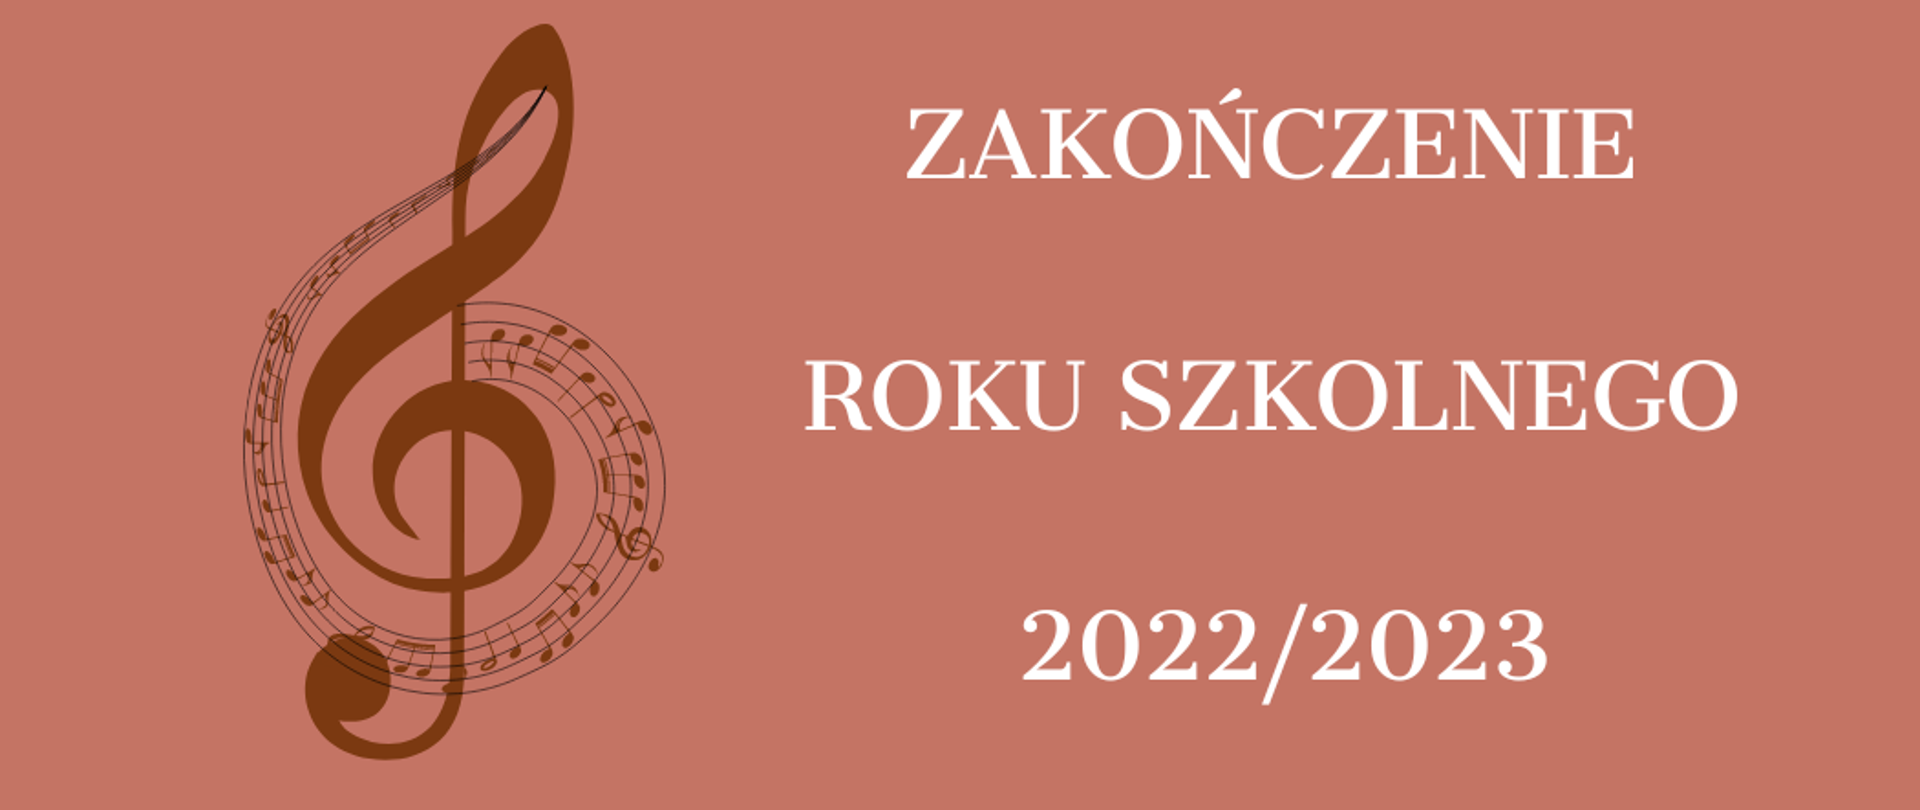 Zakończenie roku szkolnego 2022/2023 po lewej klucz wiolinowy opleciony nutami na pięciolinii